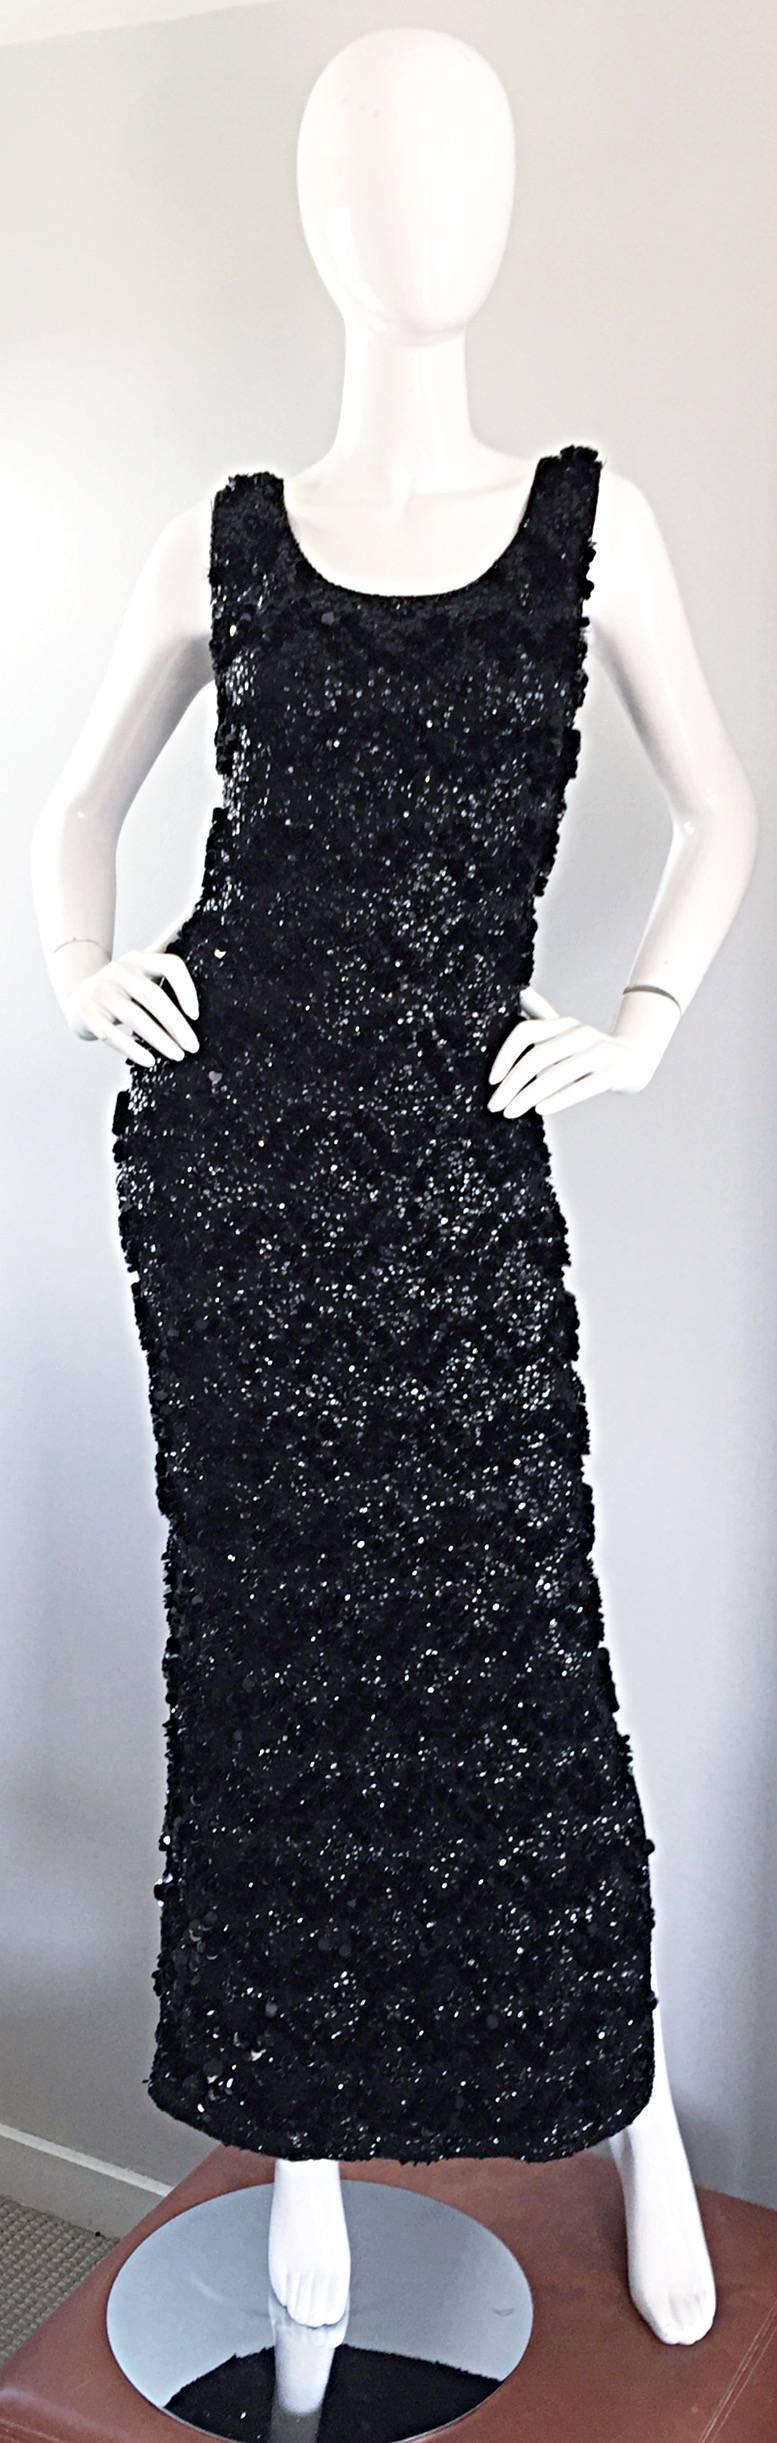 Époustouflante robe de soirée des années 1950 en maille de laine noire entièrement pailletée et pailleteuse ! Ce bijou a été fabriqué à Hong Kong, avec le label recherché 